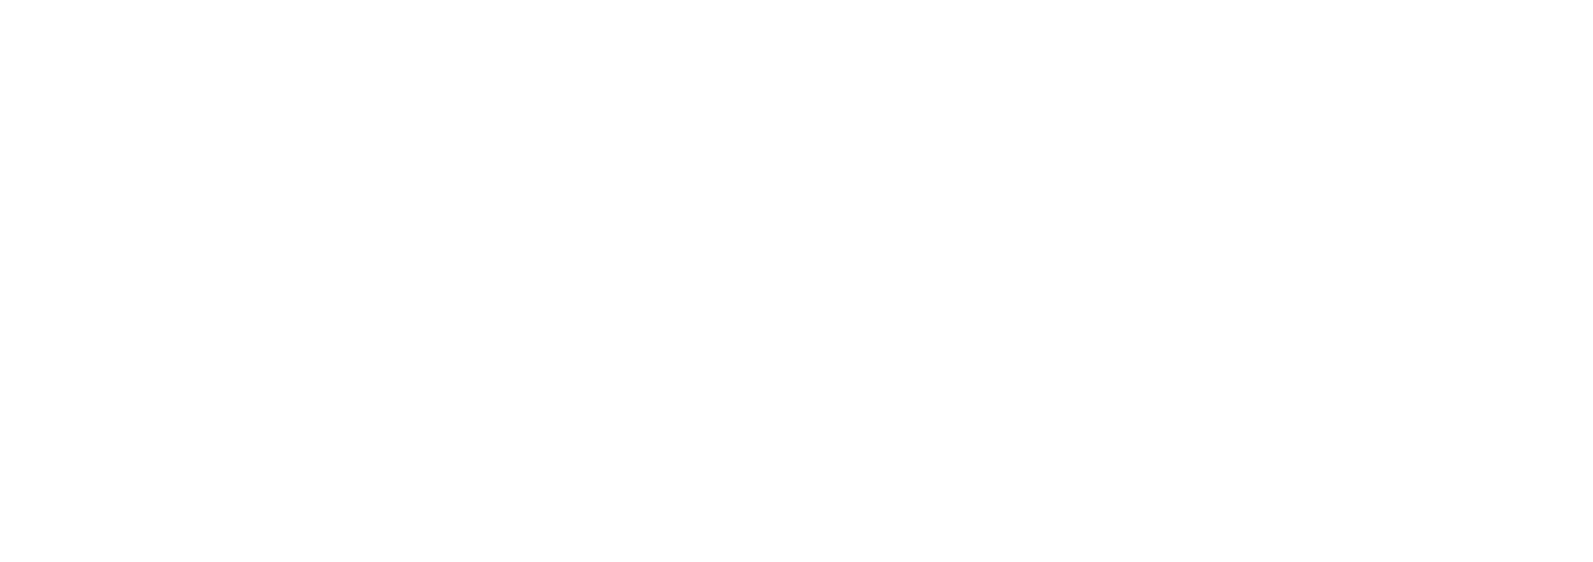 Nxu Logo groß für dunkle Hintergründe (transparentes PNG)